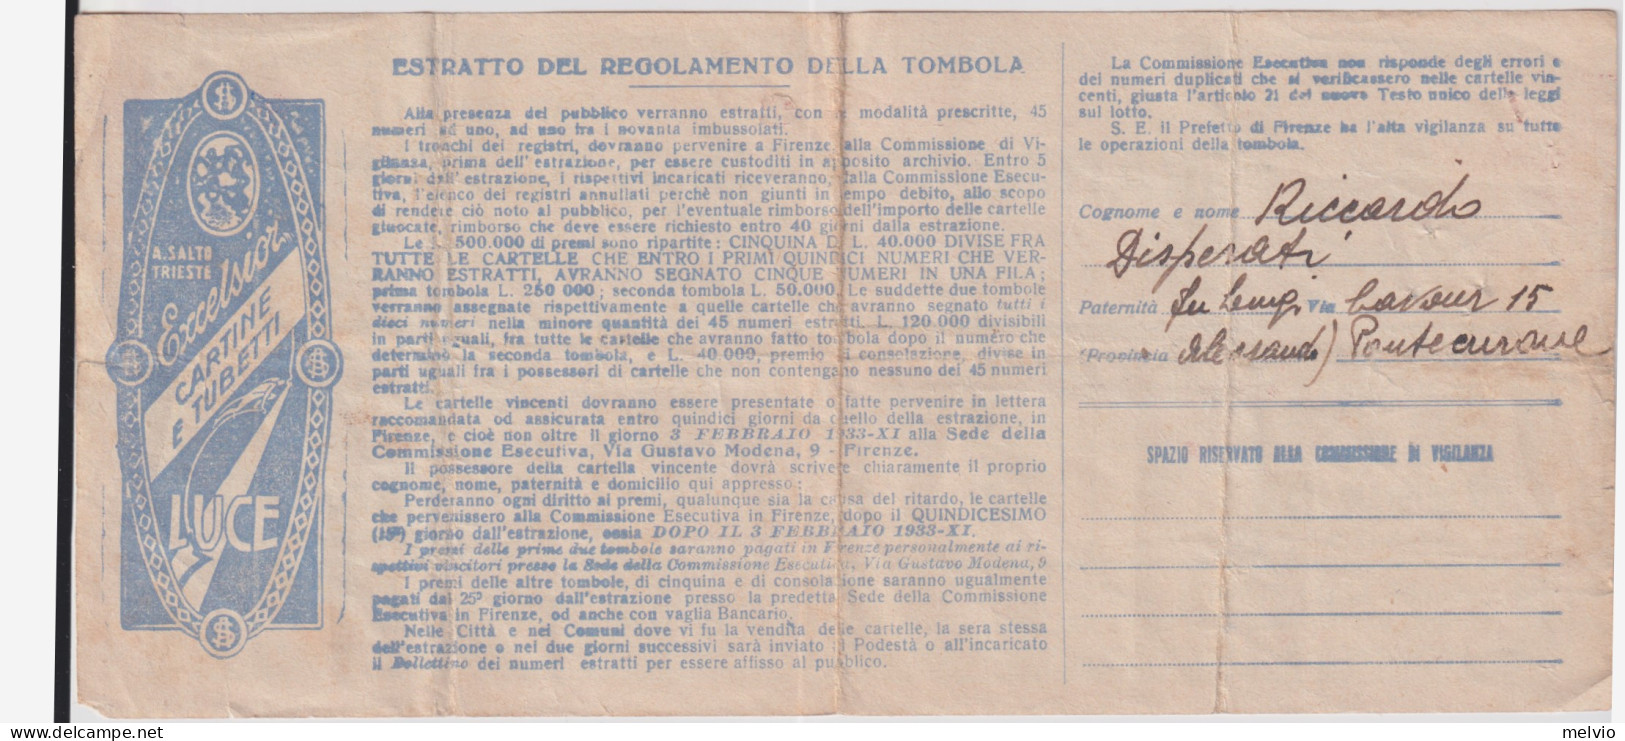 1933-cartella Della Grande Tombola Nazionale Con Estrazione A Firenze - Billetes De Lotería